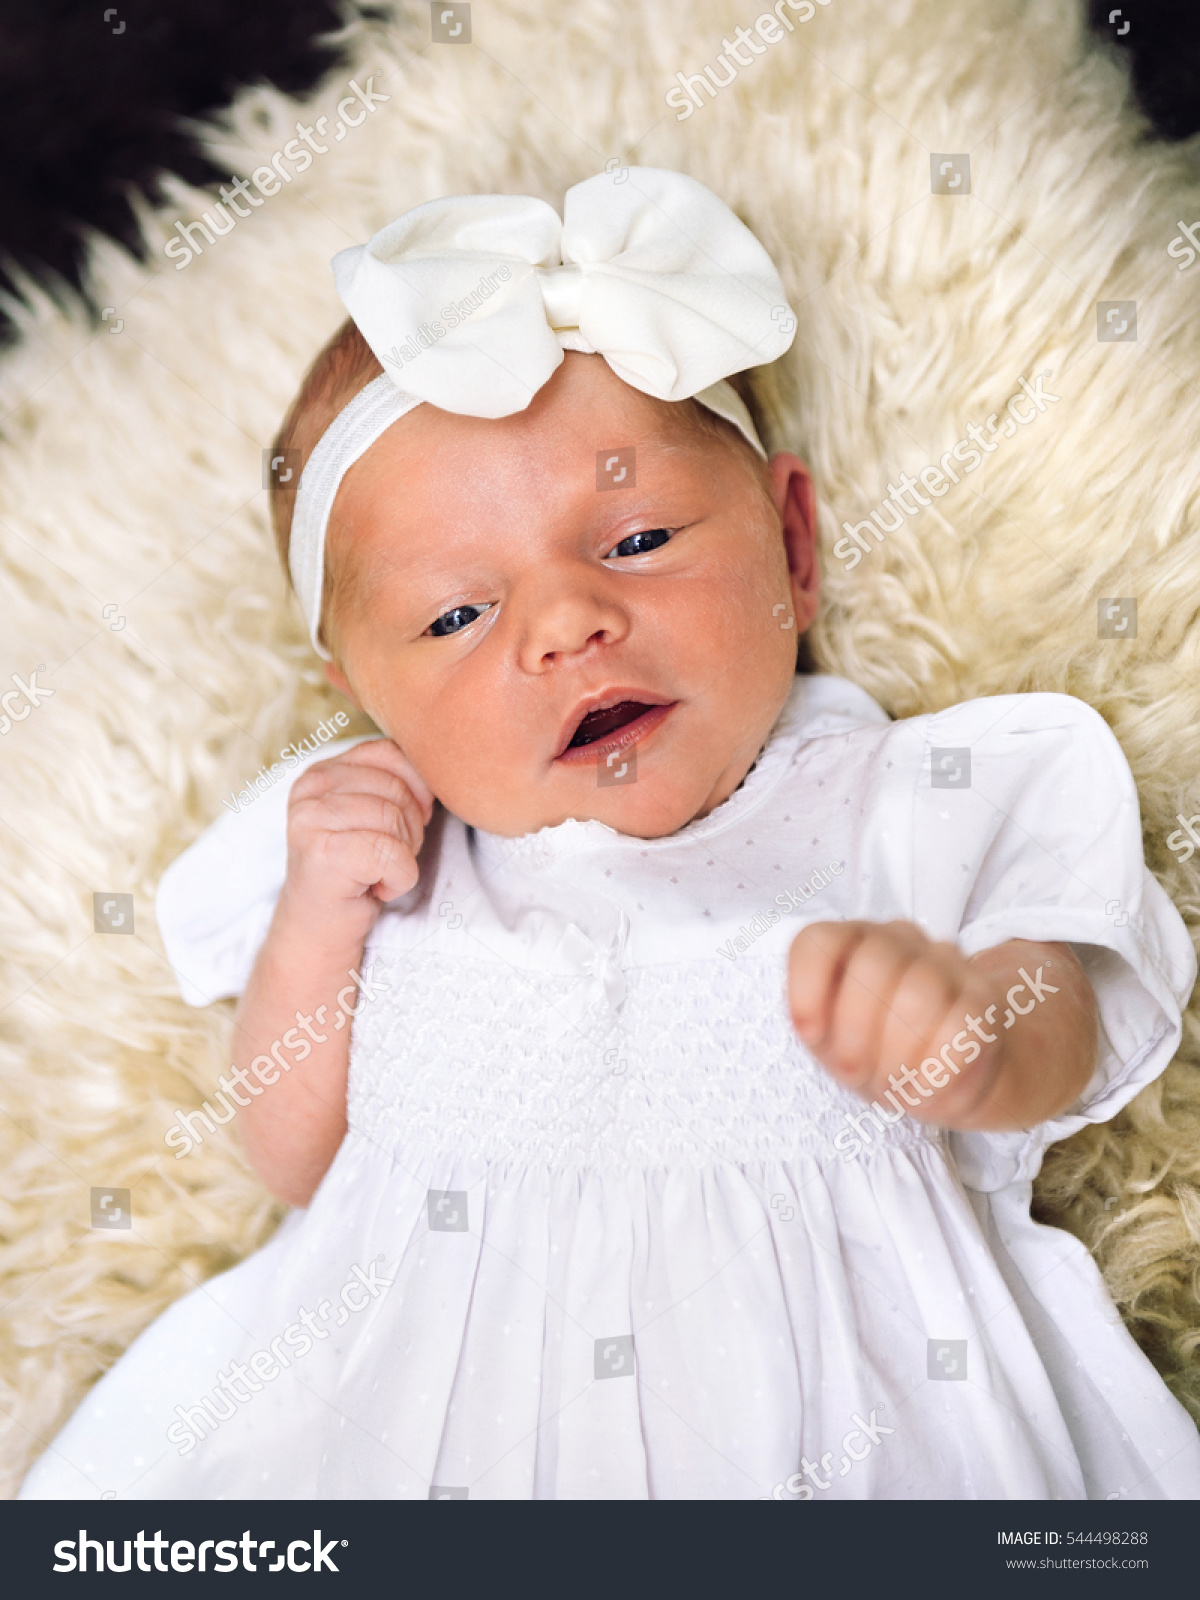 photoshoot for newborn baby girl